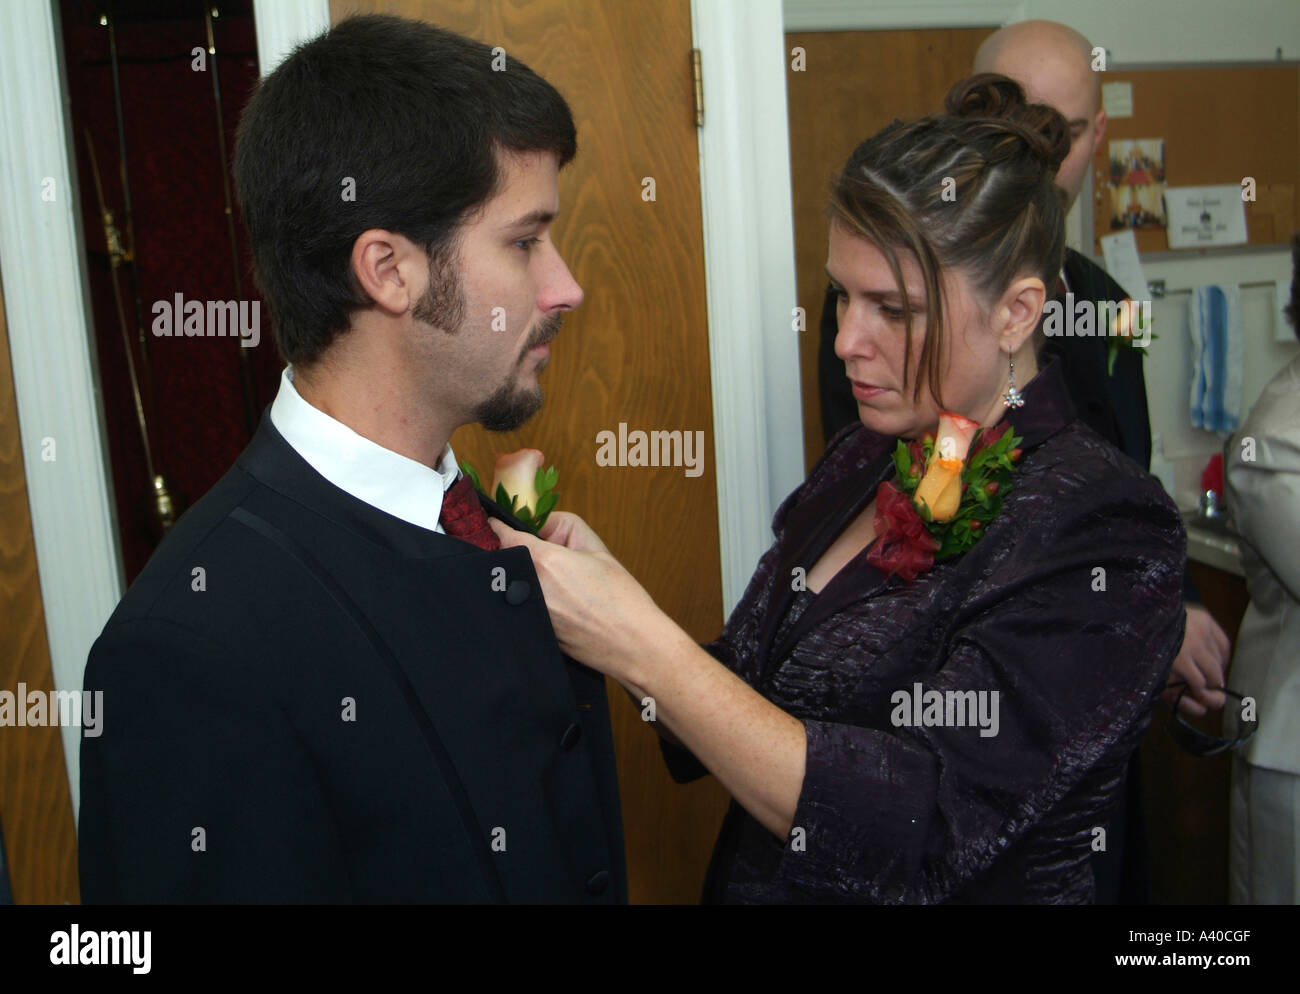 Frau pinning Corsage auf Trauzeuge bei einer Hochzeit Stockfoto